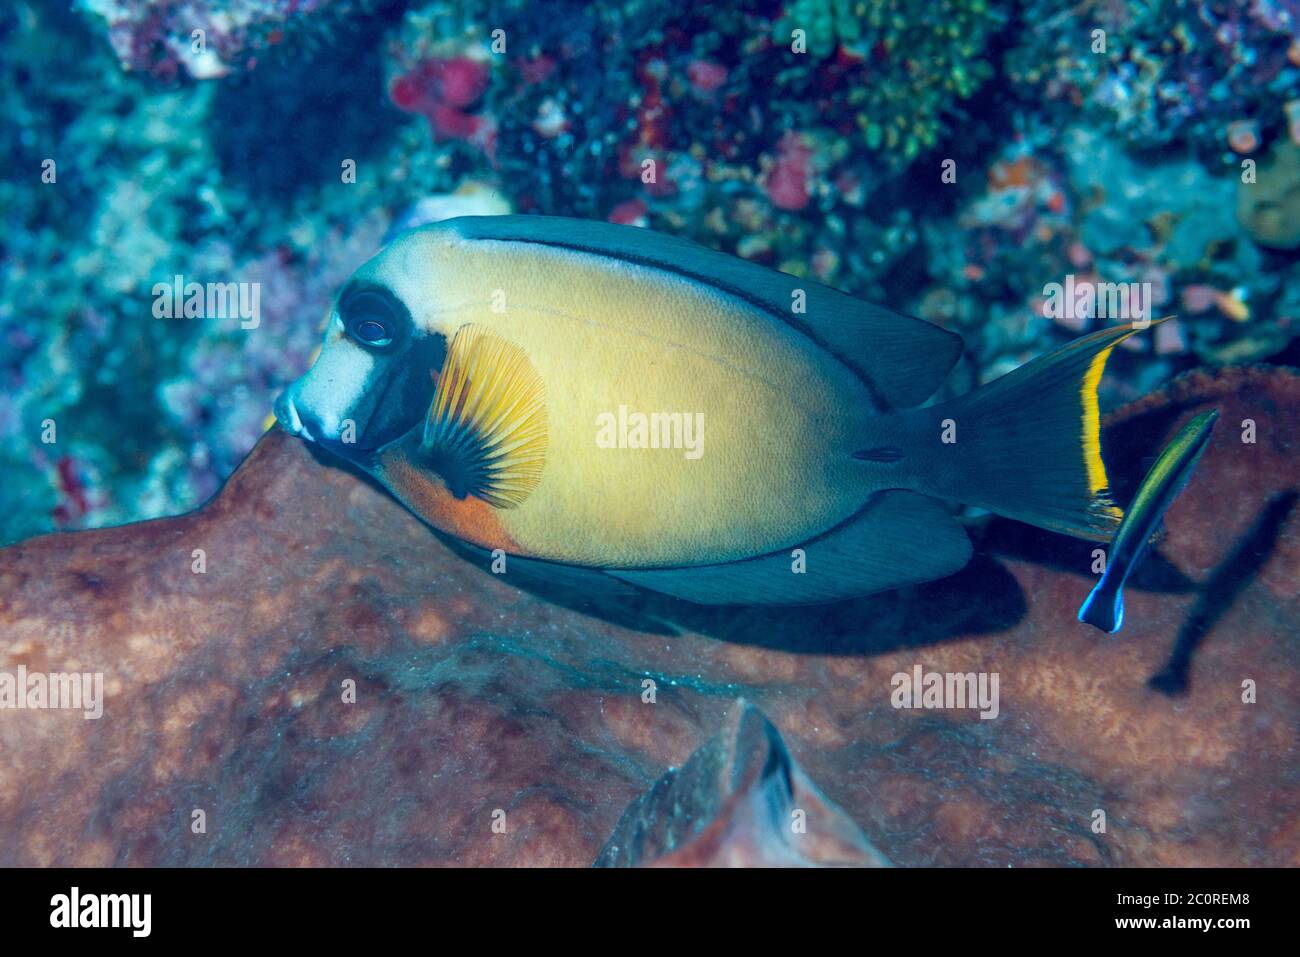 Mimic surgeonfish, Chocolat tang [Acanthurus pyroferus].  North Sulawesi, Indonesia. Stock Photo